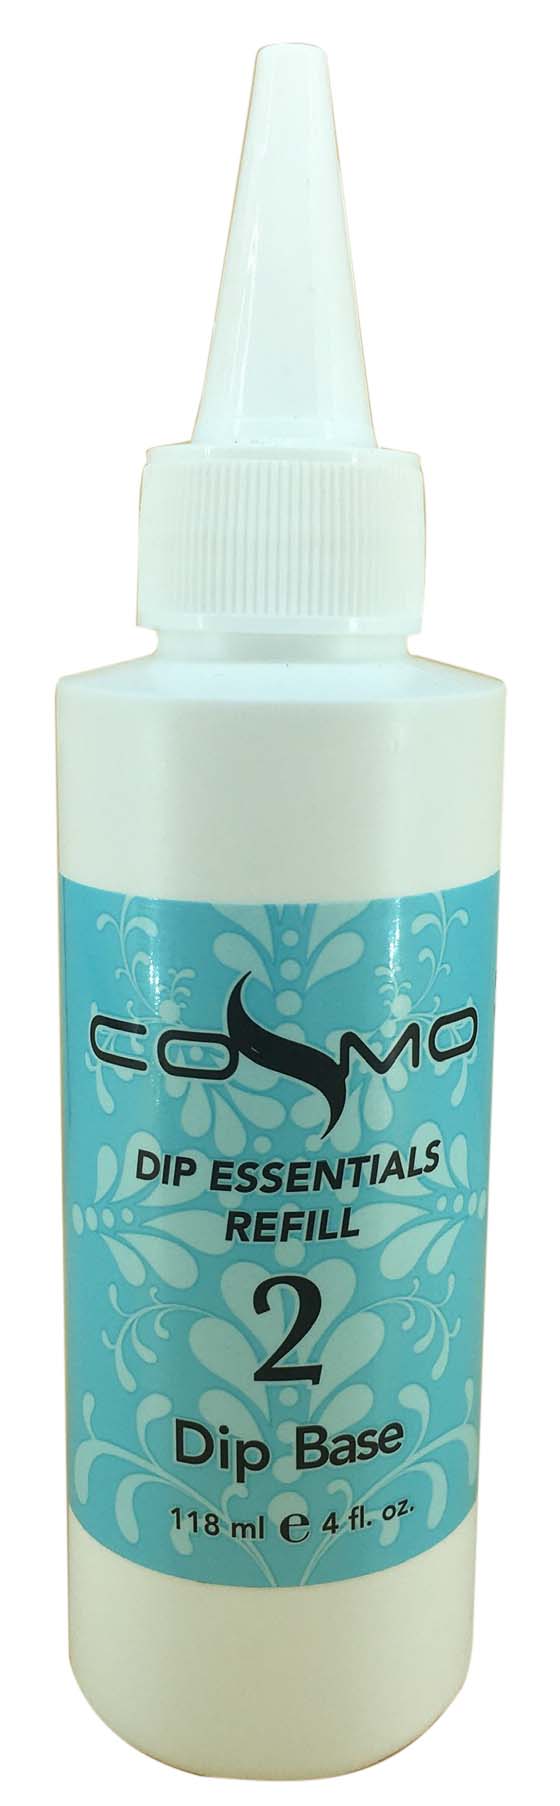 Cosmo Dip Liquid 4 oz - Base